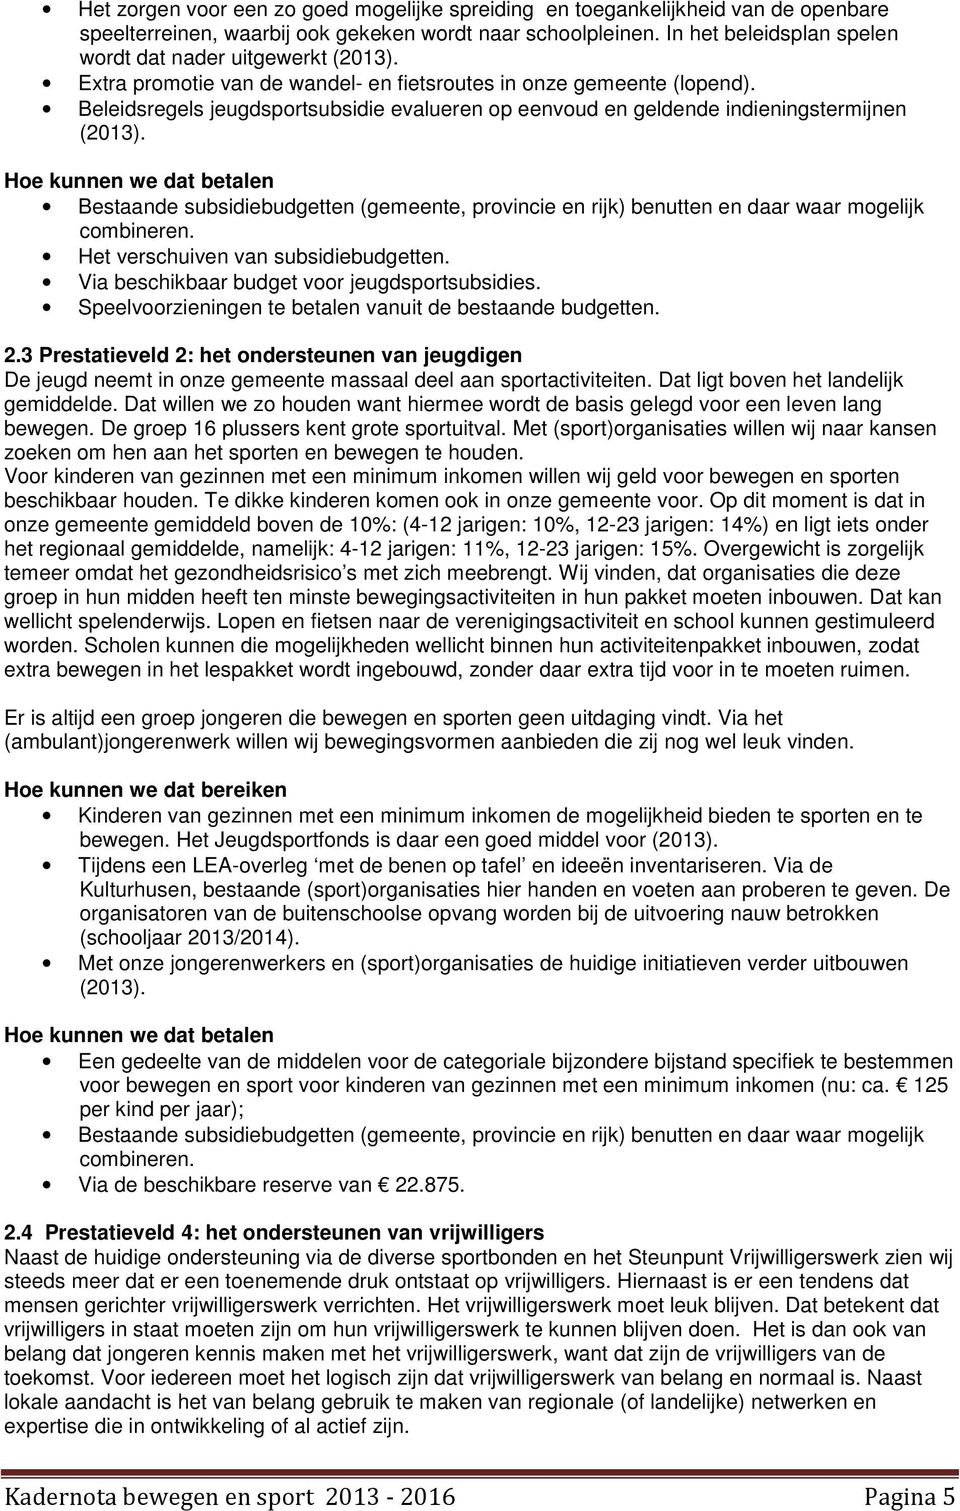 Beleidsregels jeugdsportsubsidie evalueren op eenvoud en geldende indieningstermijnen (2013).